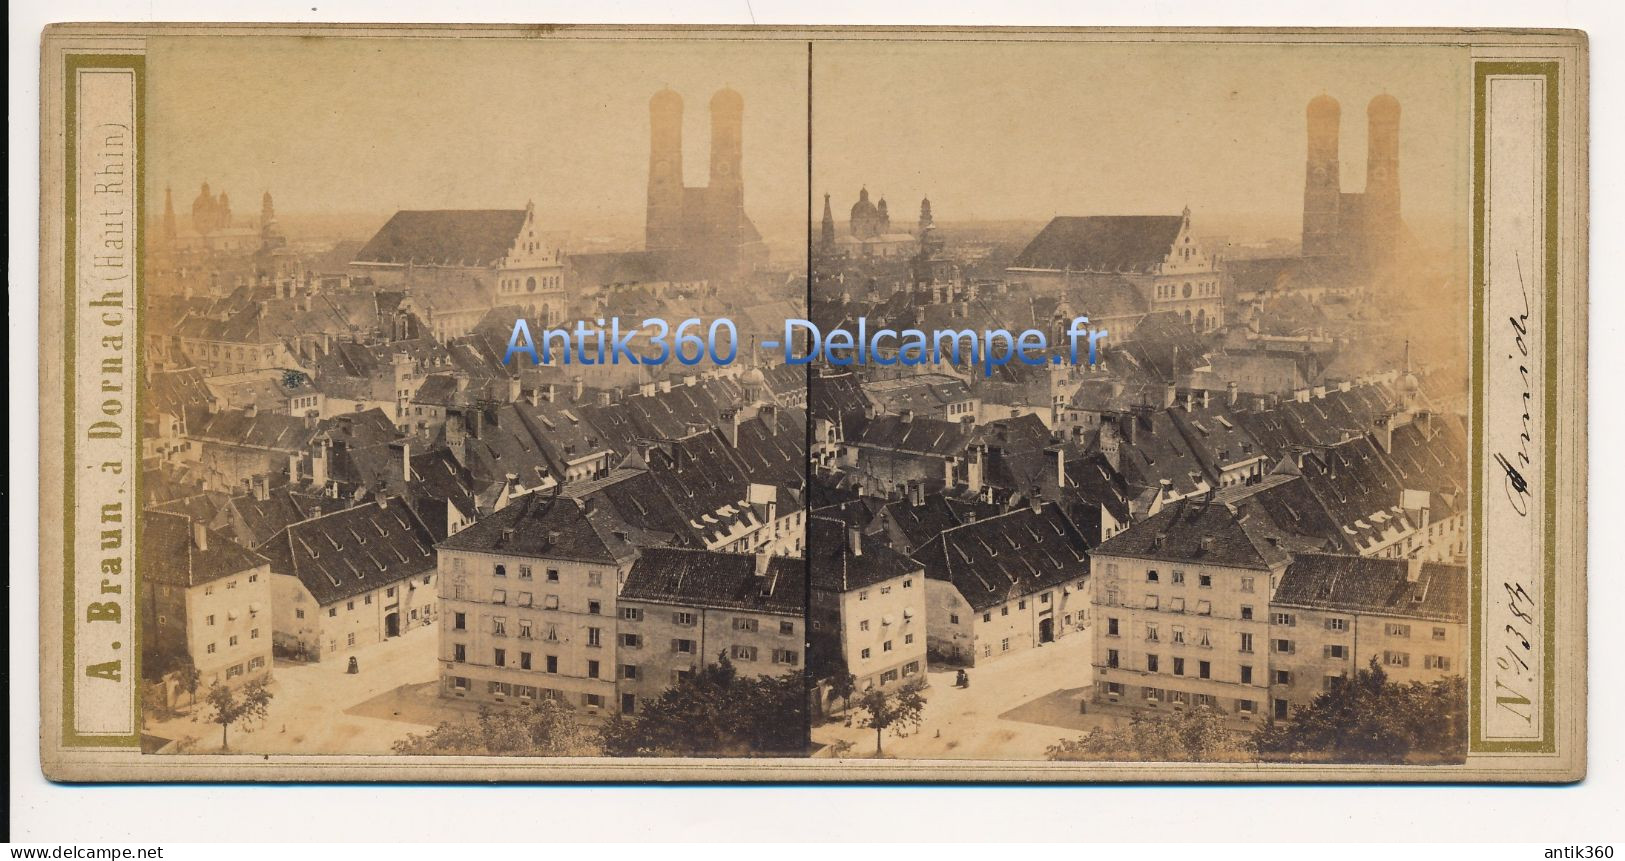 Photographie Ancienne Vue Stéréoscopique Circa 1860 Allemagne Vue De Munich Photographe Adolphe BRAUN - Stereo-Photographie